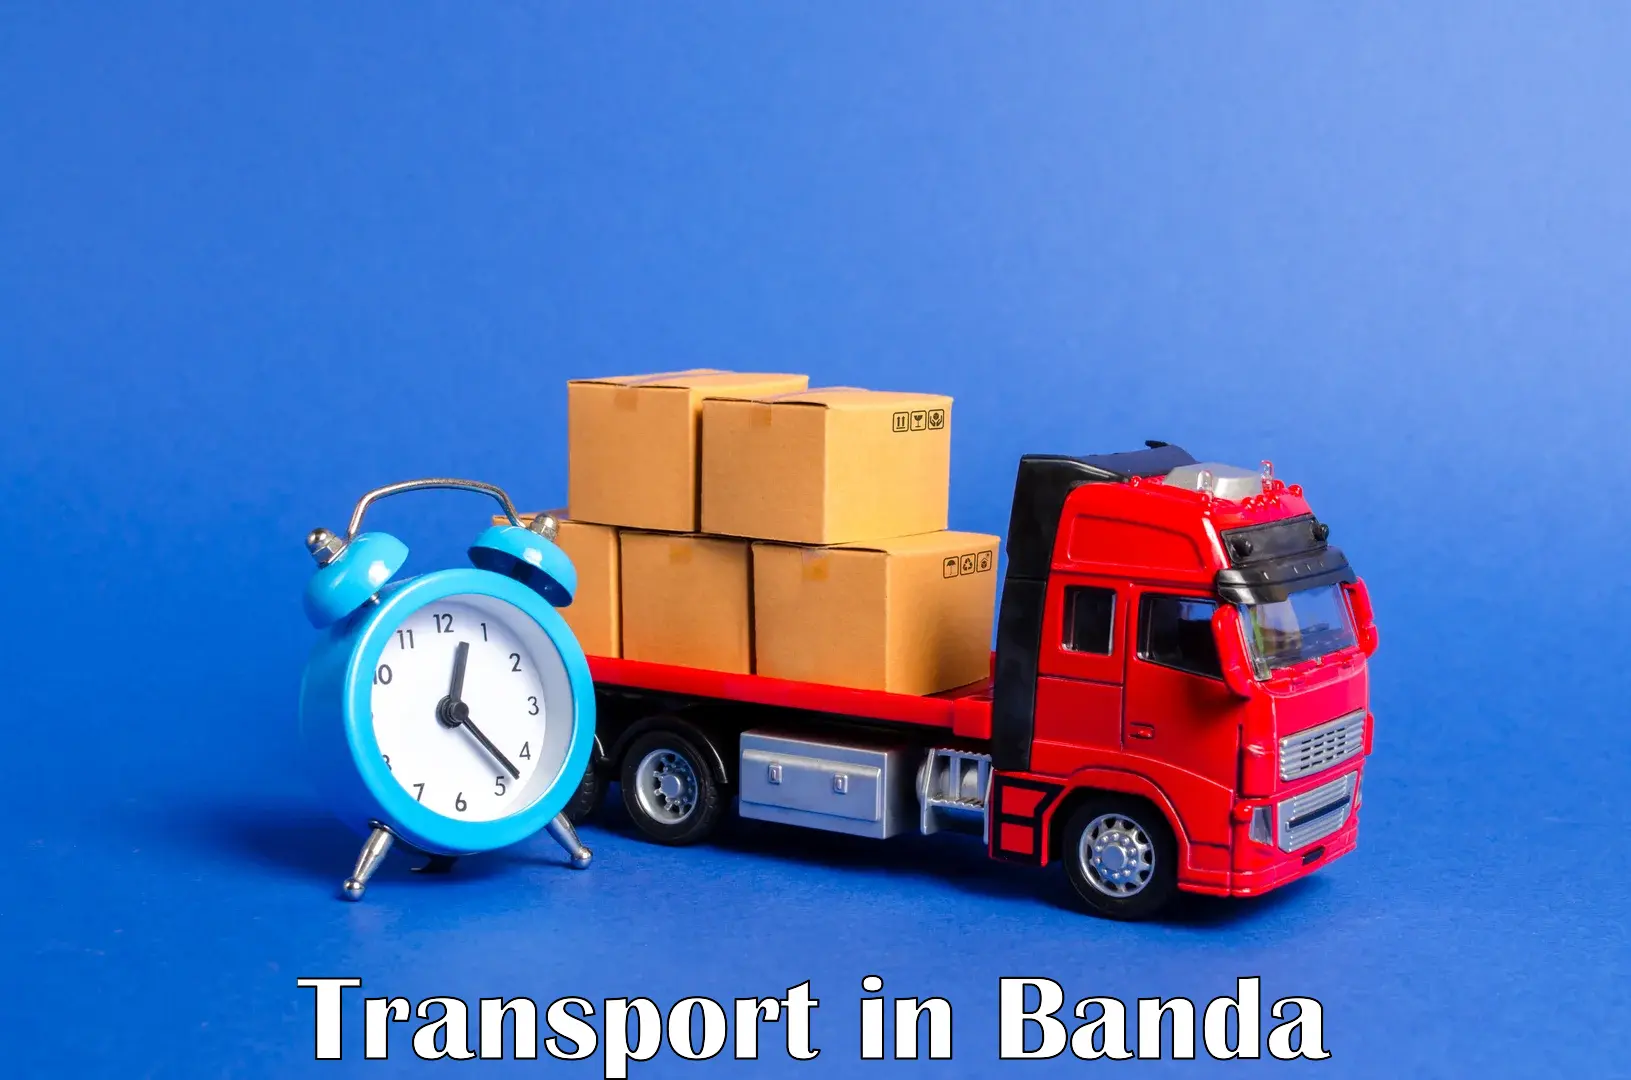 Furniture transport service in Banda